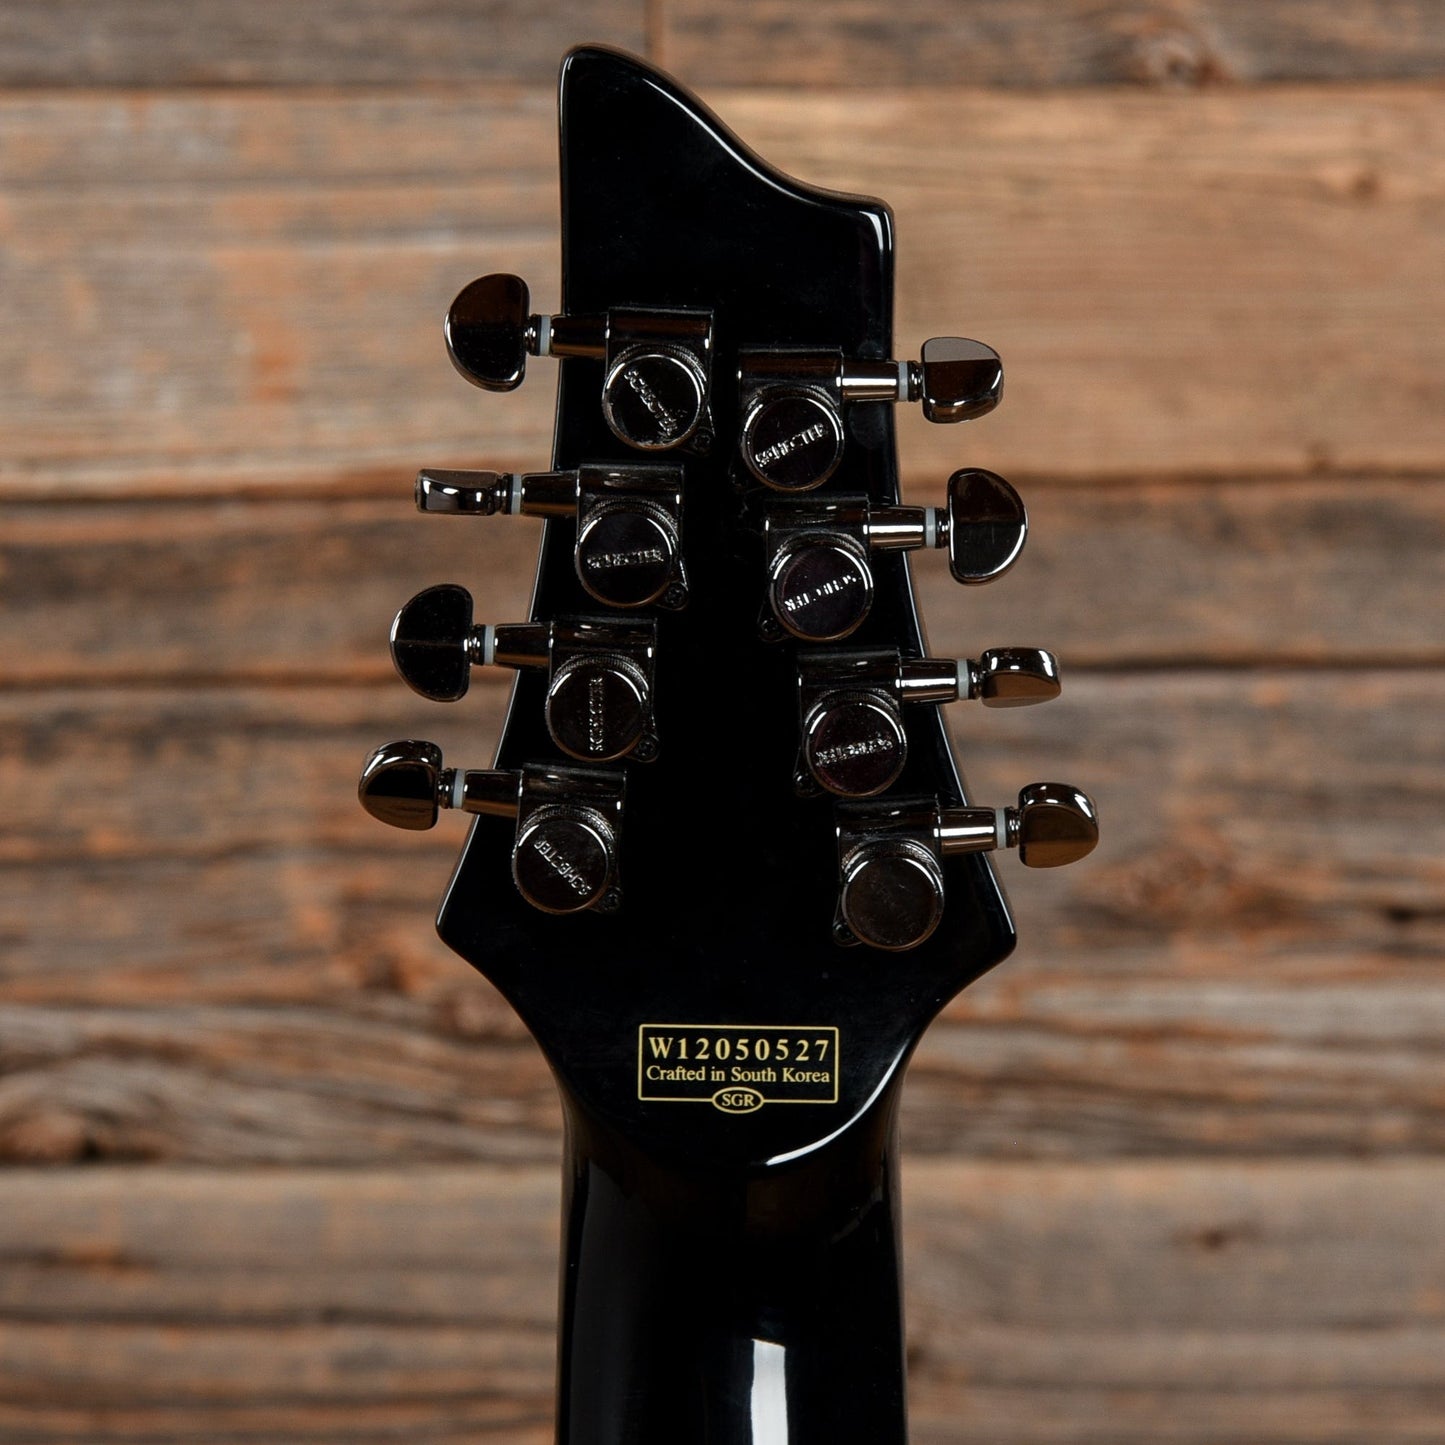 Schecter Hellraiser C-8 Black 2012 Electric Guitars / Solid Body